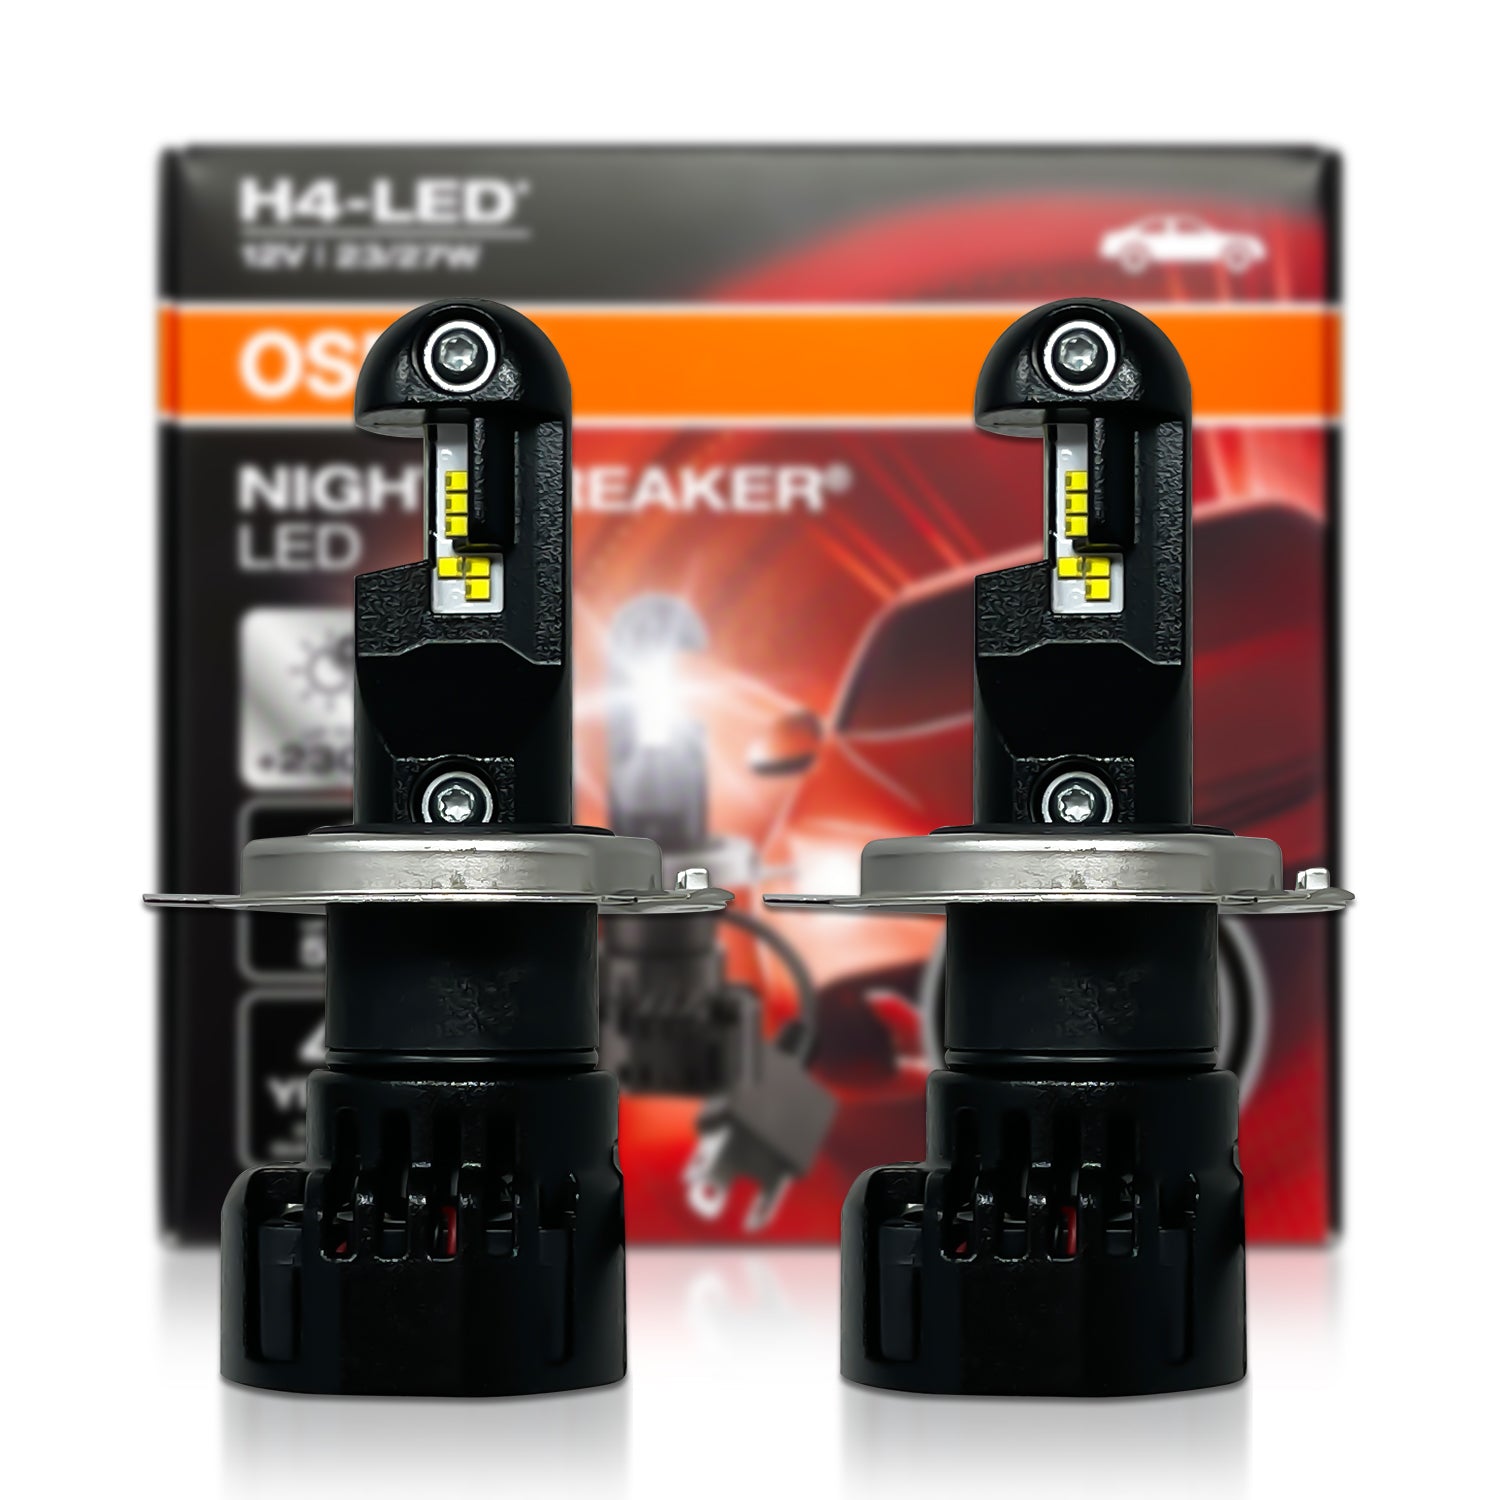 H4 Nightbreaker LED flackert! Qualitätsprobleme? So reagiert OSRAM (UPDATE)  